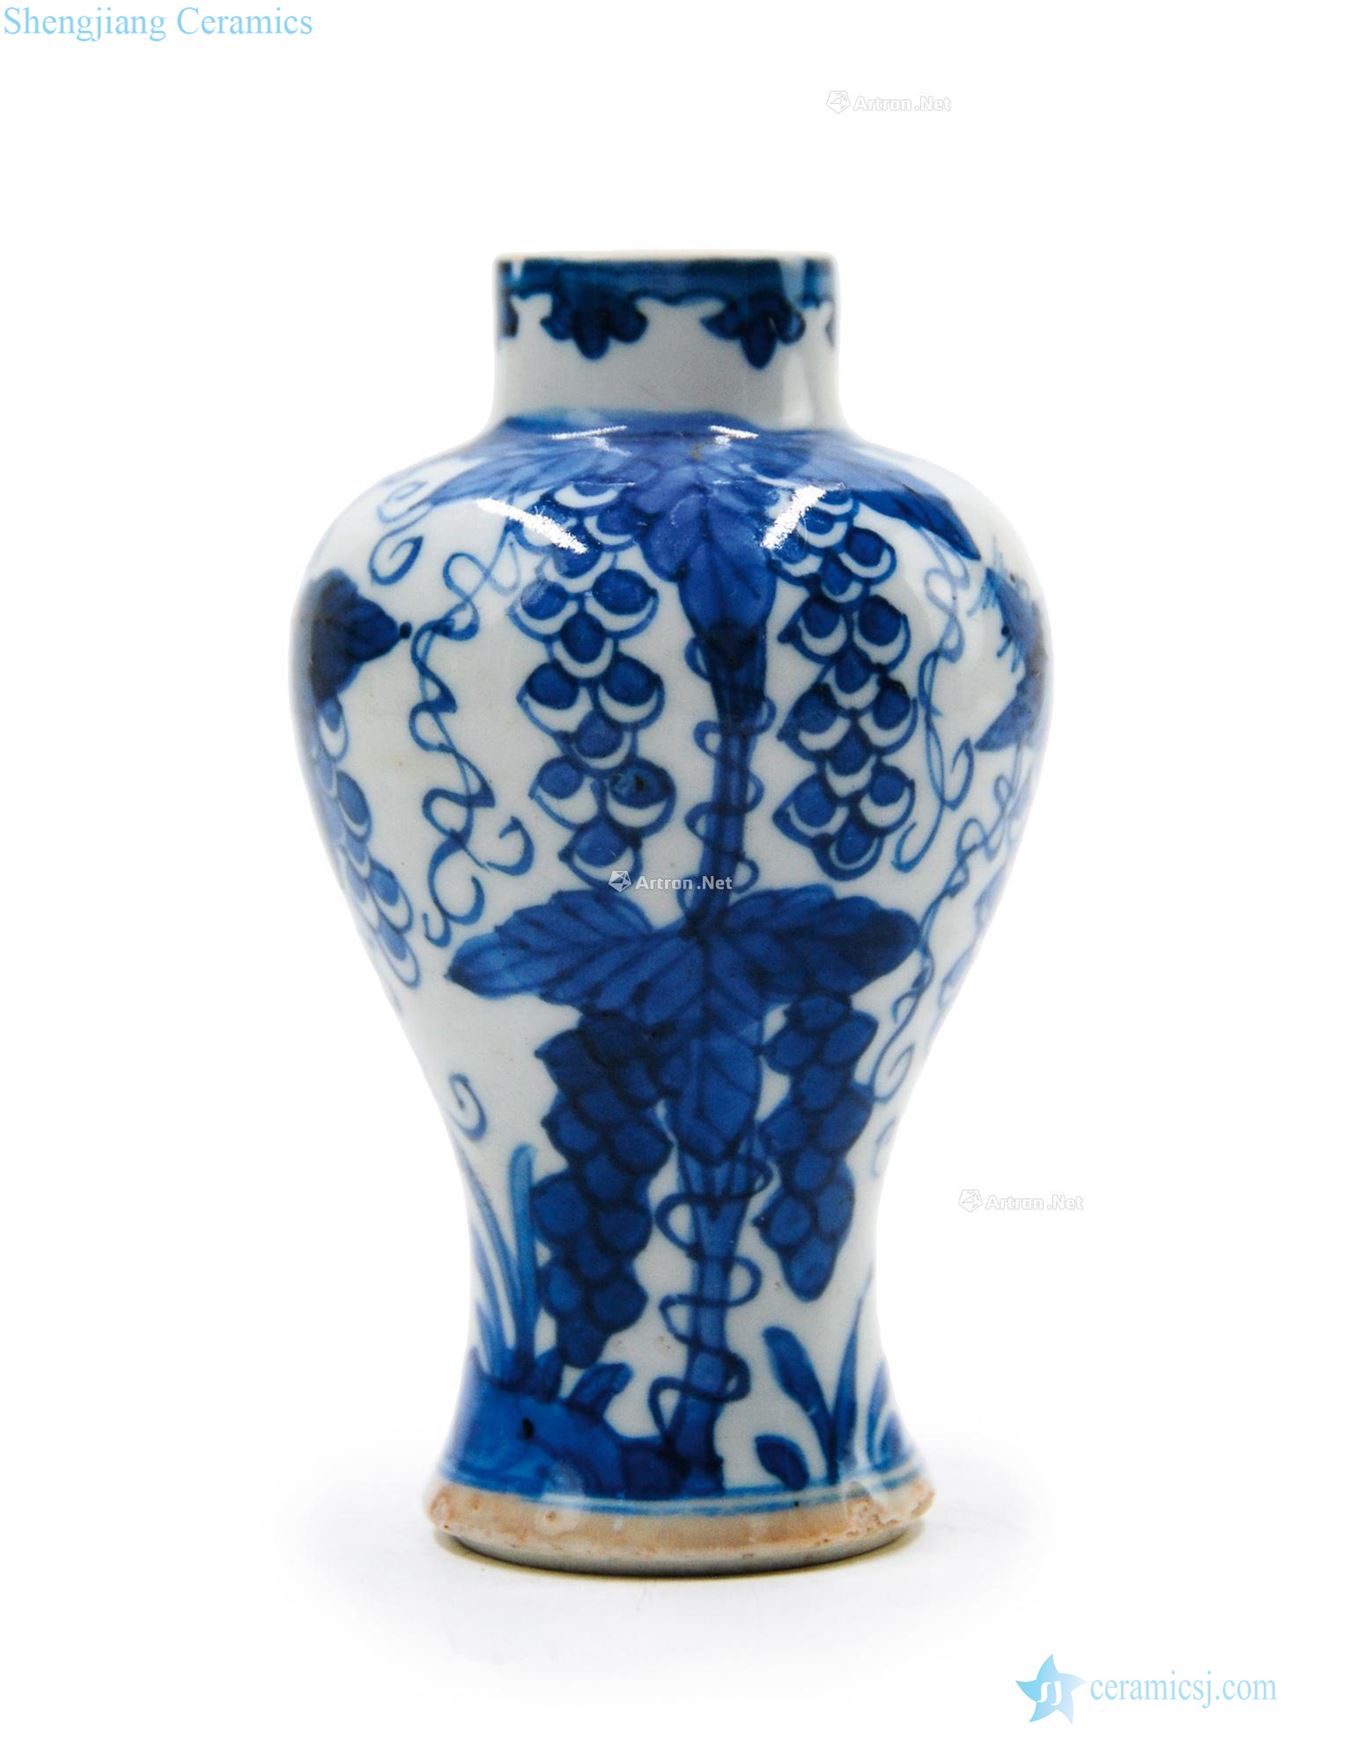 Qing dynasty blue and white flower grain bottle